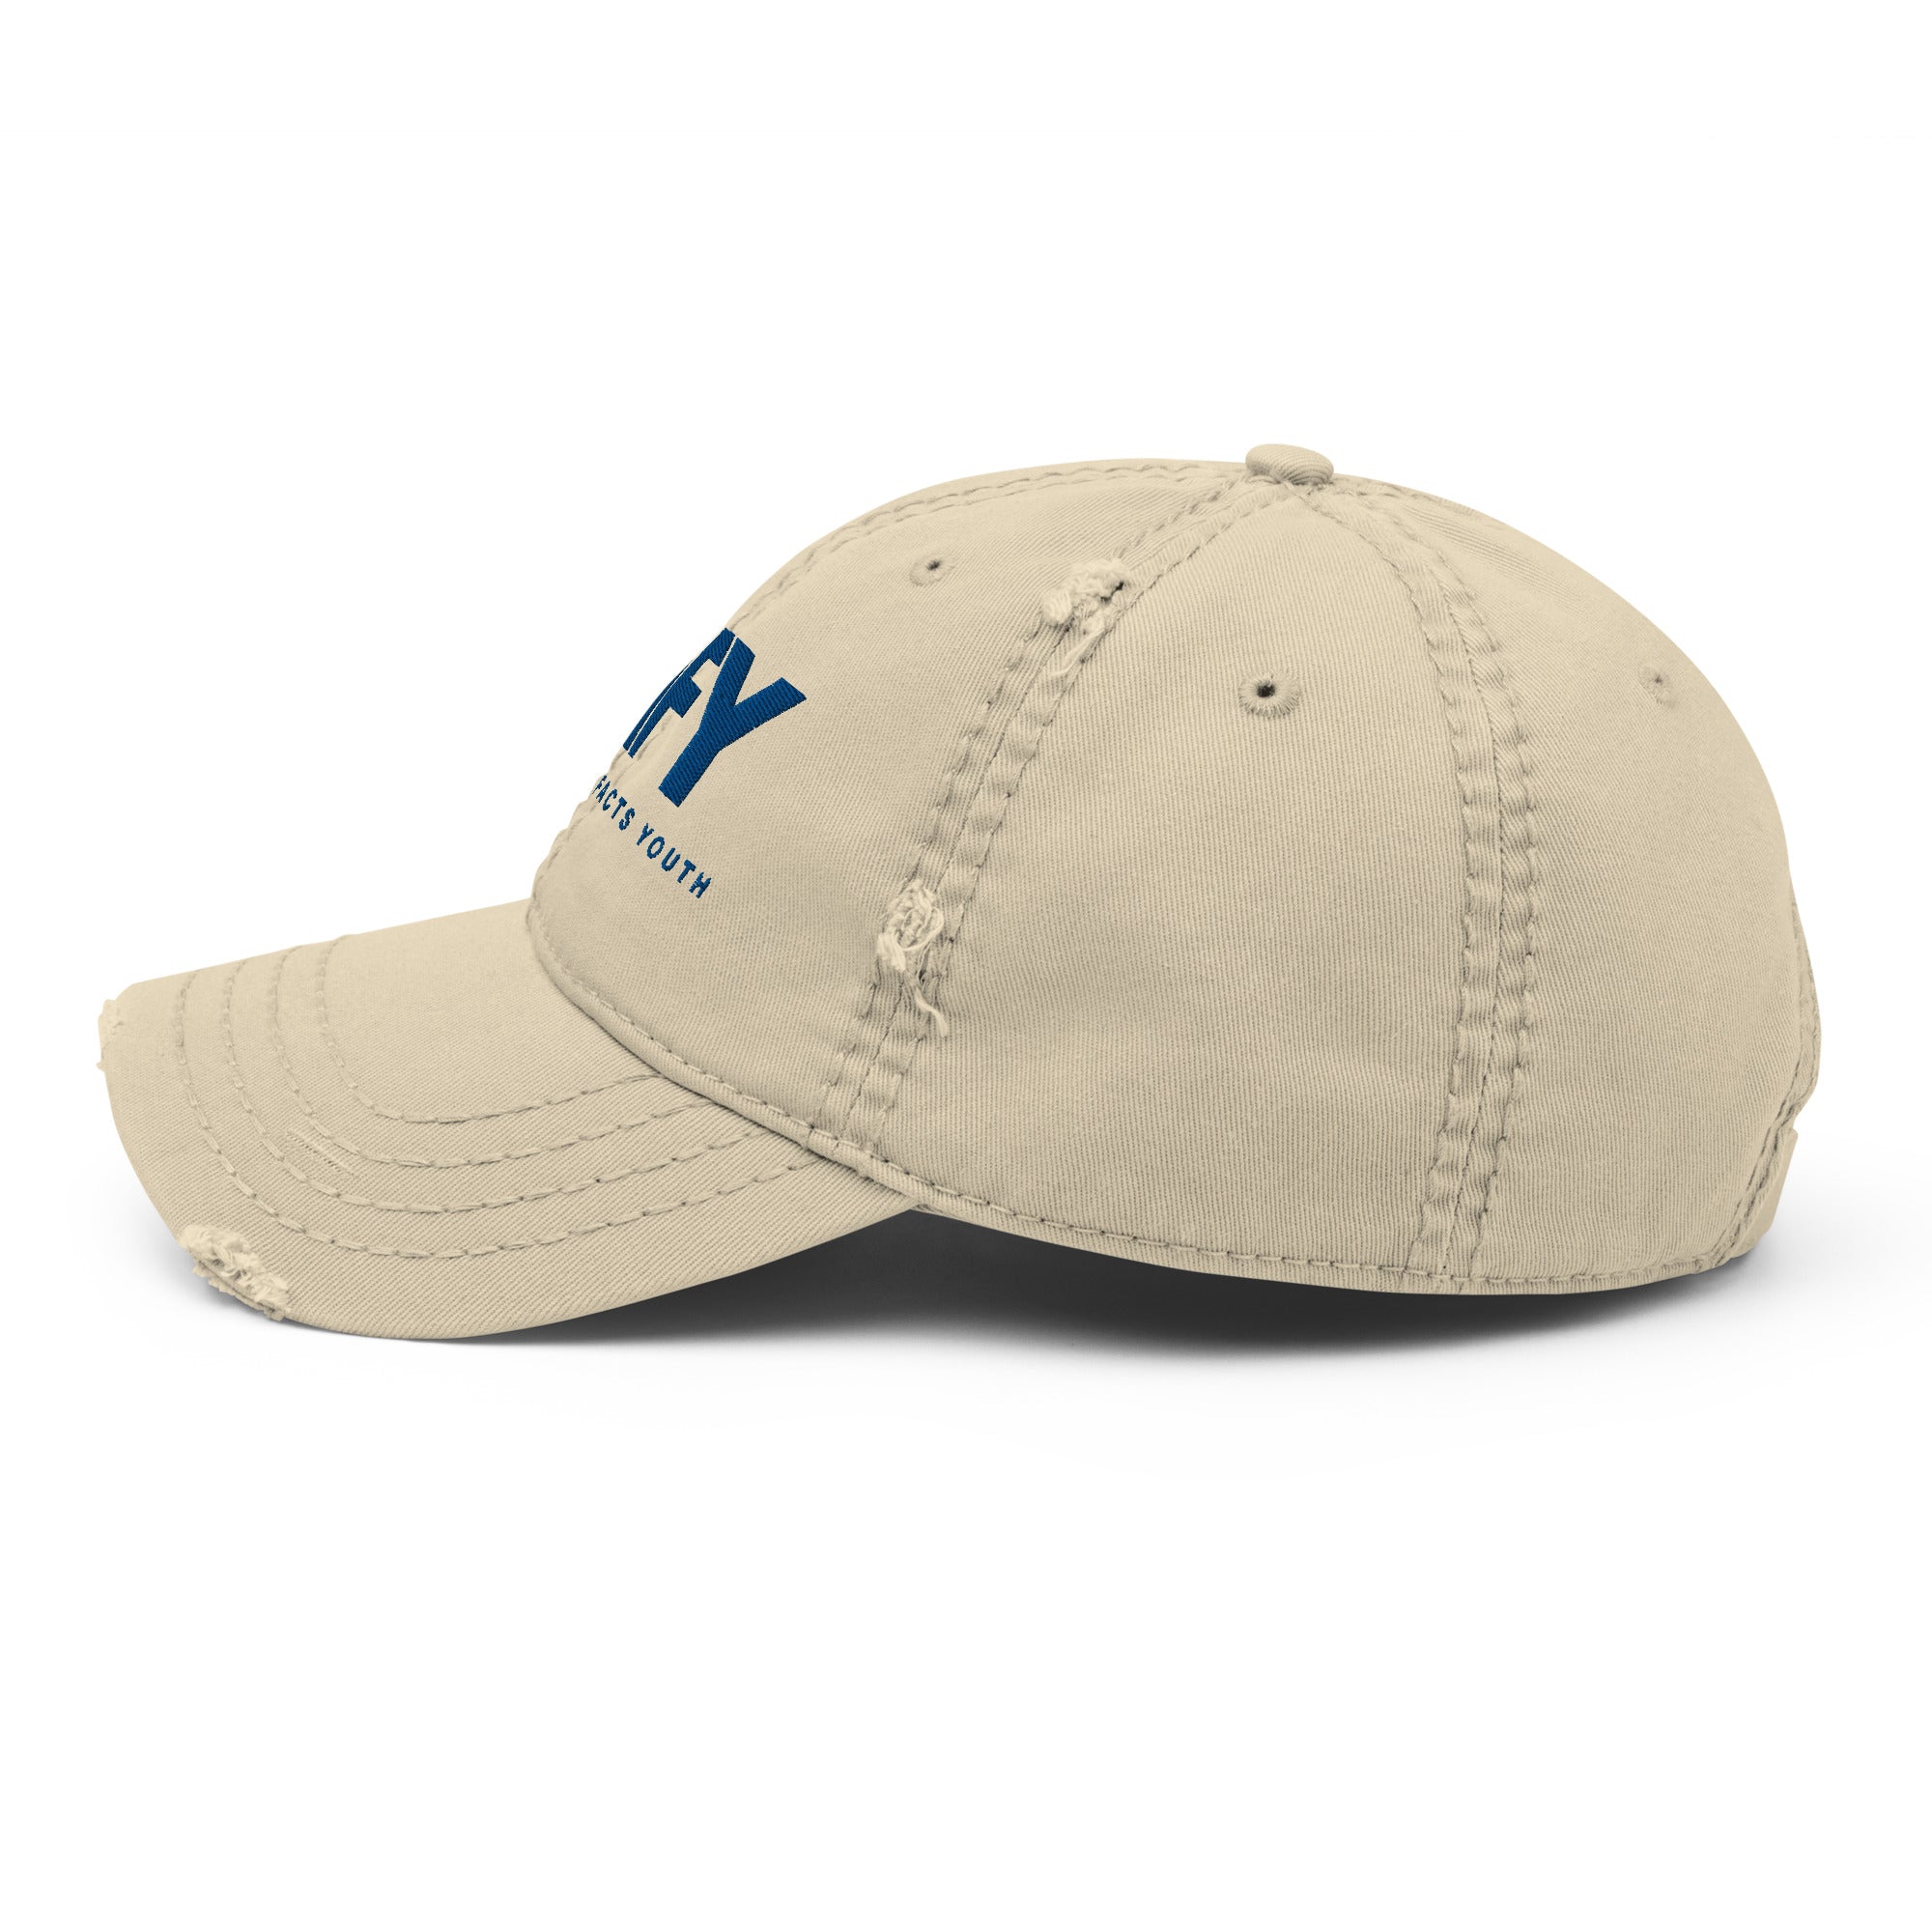 AFY Distressed Dad Hat Blue Logo